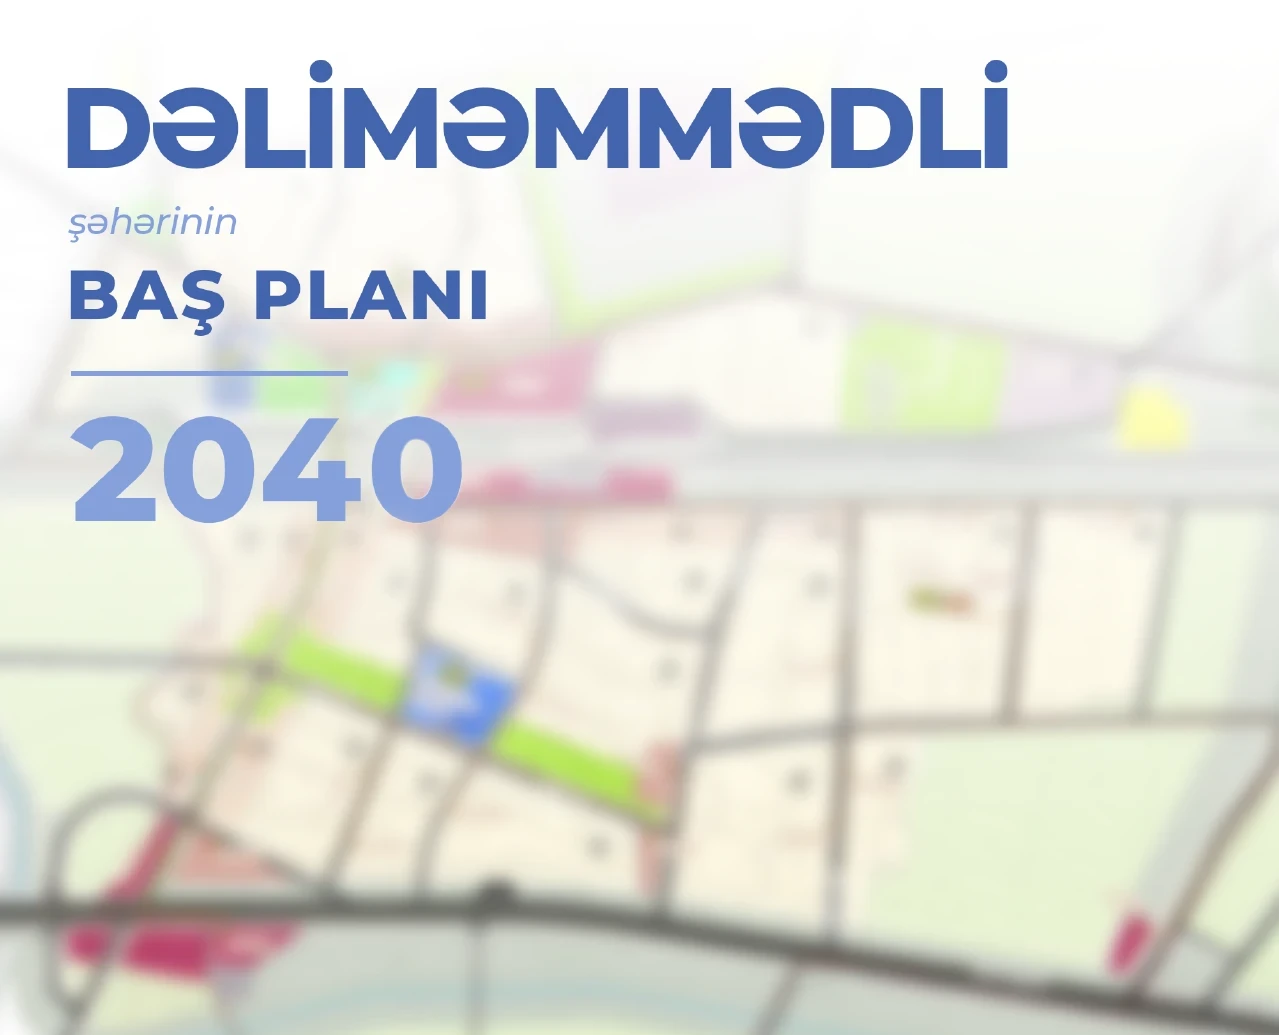 Утвержден новый Генеральный план города Делимаммедли